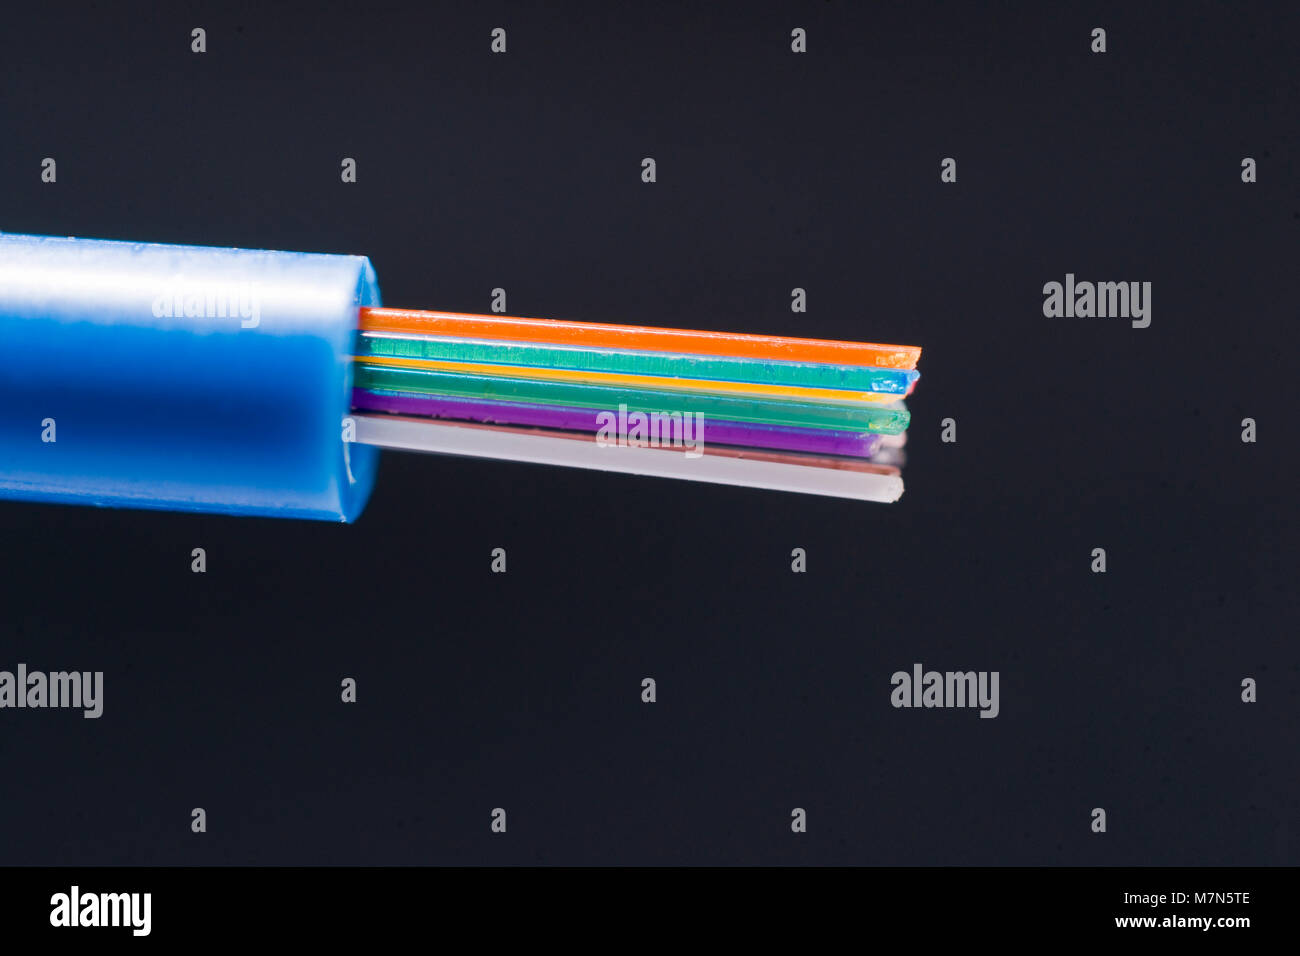 Des codes de couleur 250 microns fibres optiques qui dépasse de 3 mm tube tampon Banque D'Images